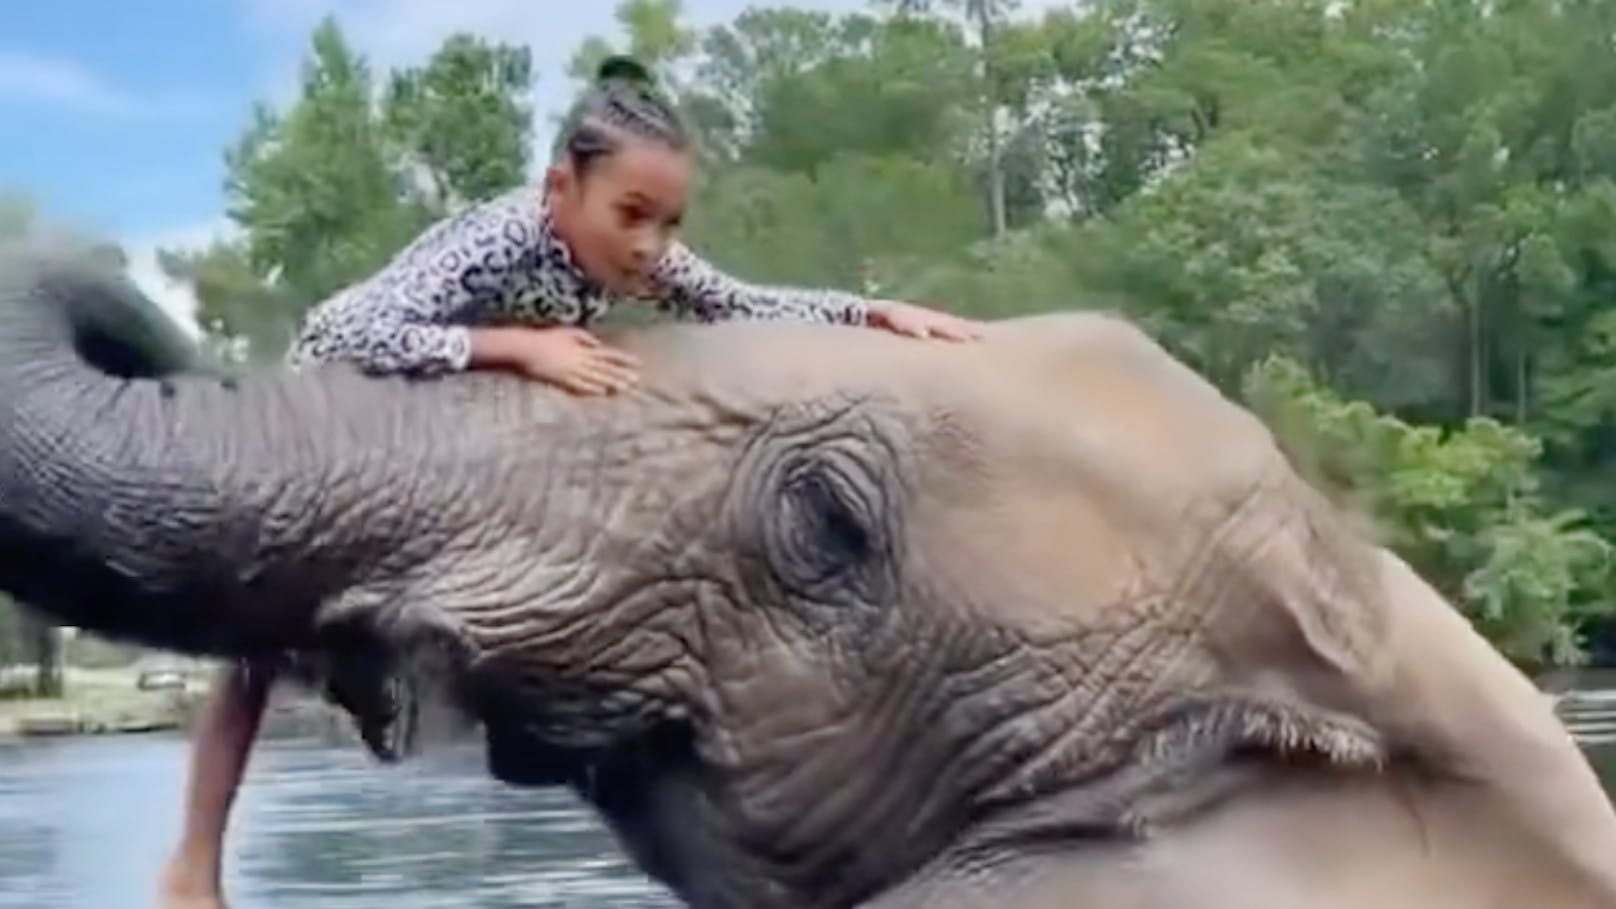 Chris Browns Tochter Royalty (7) beim Ritt auf einem Elefanten